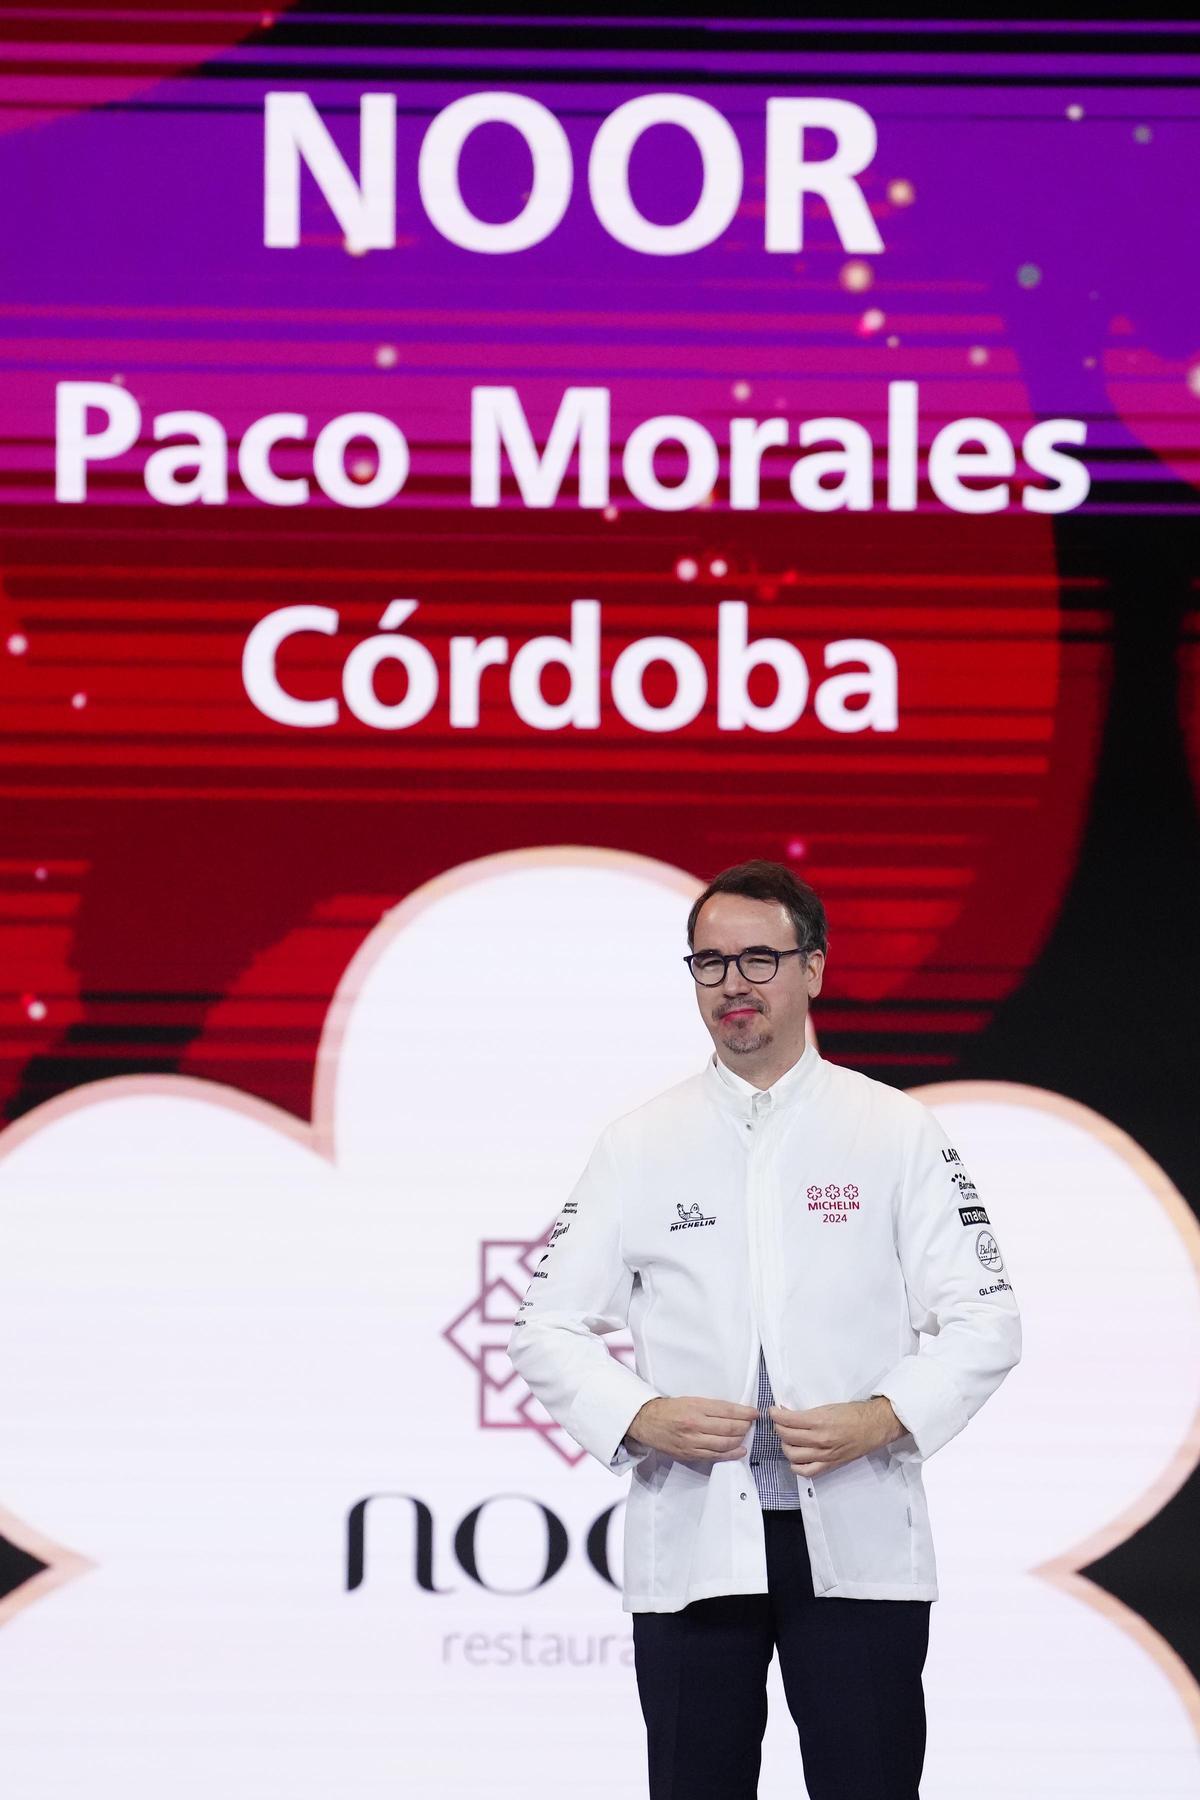 El Noor, uno de los dos restaurantes nuevos con tres estrellas Michelin de España